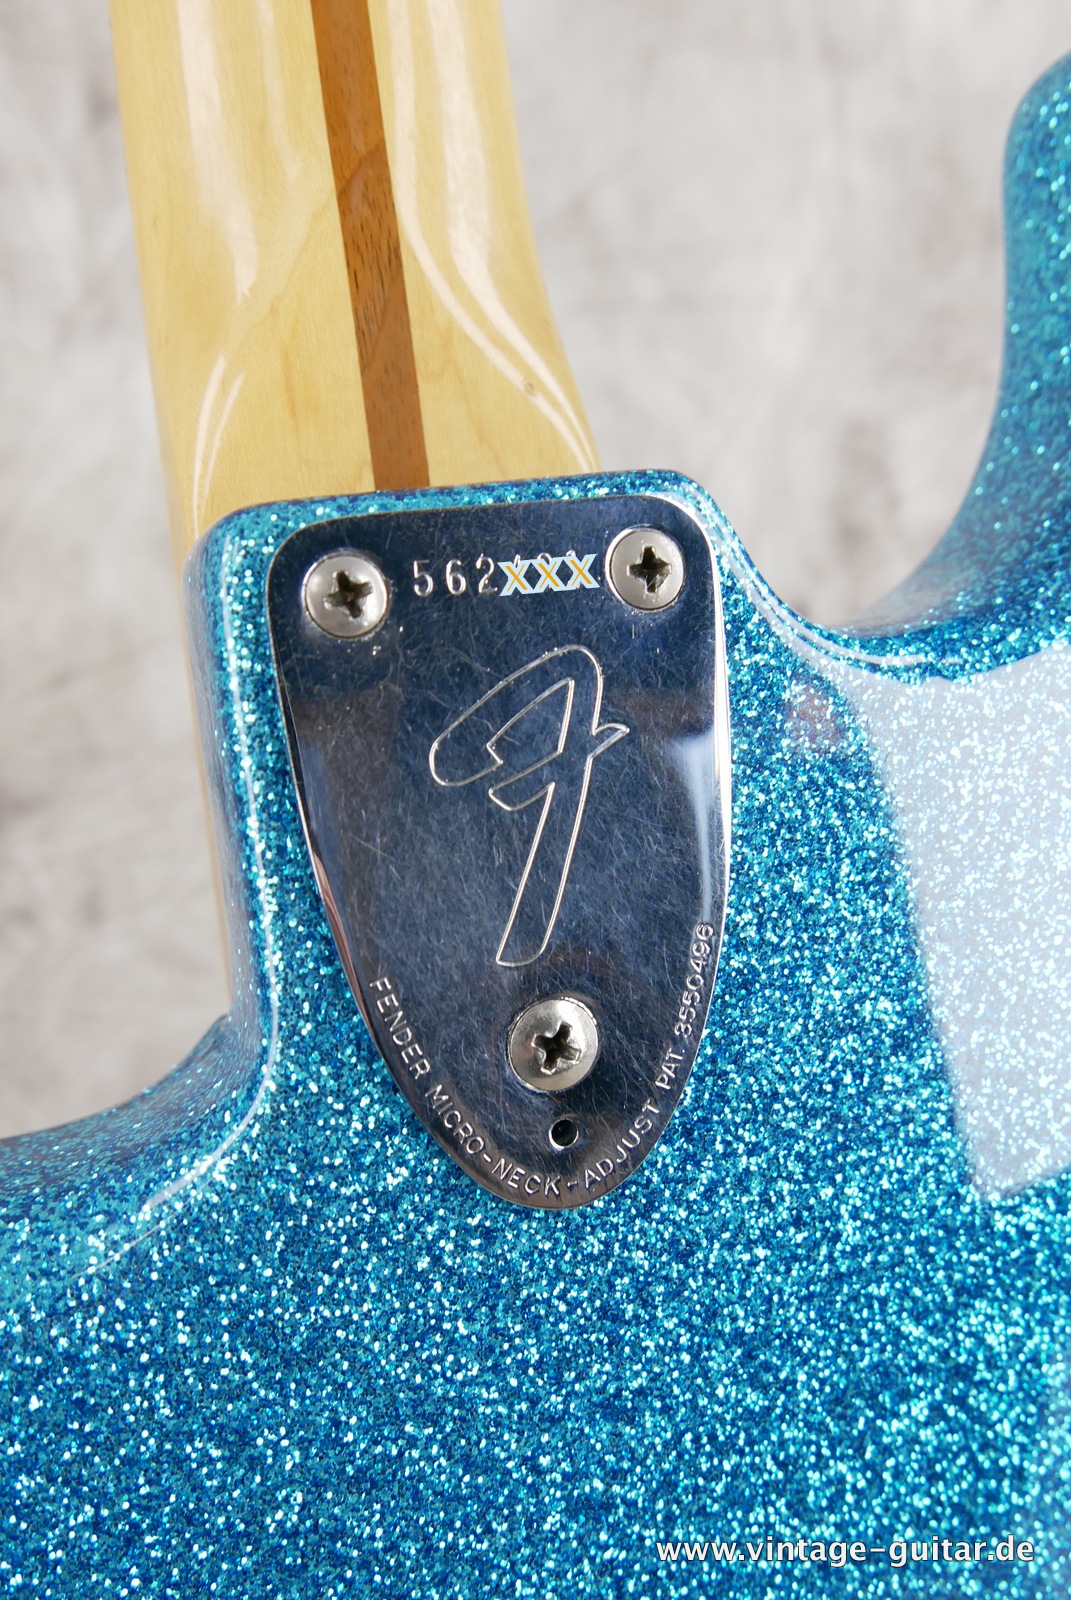 Fender-Stratocaster-1974c-blue-sparkle-013.JPG